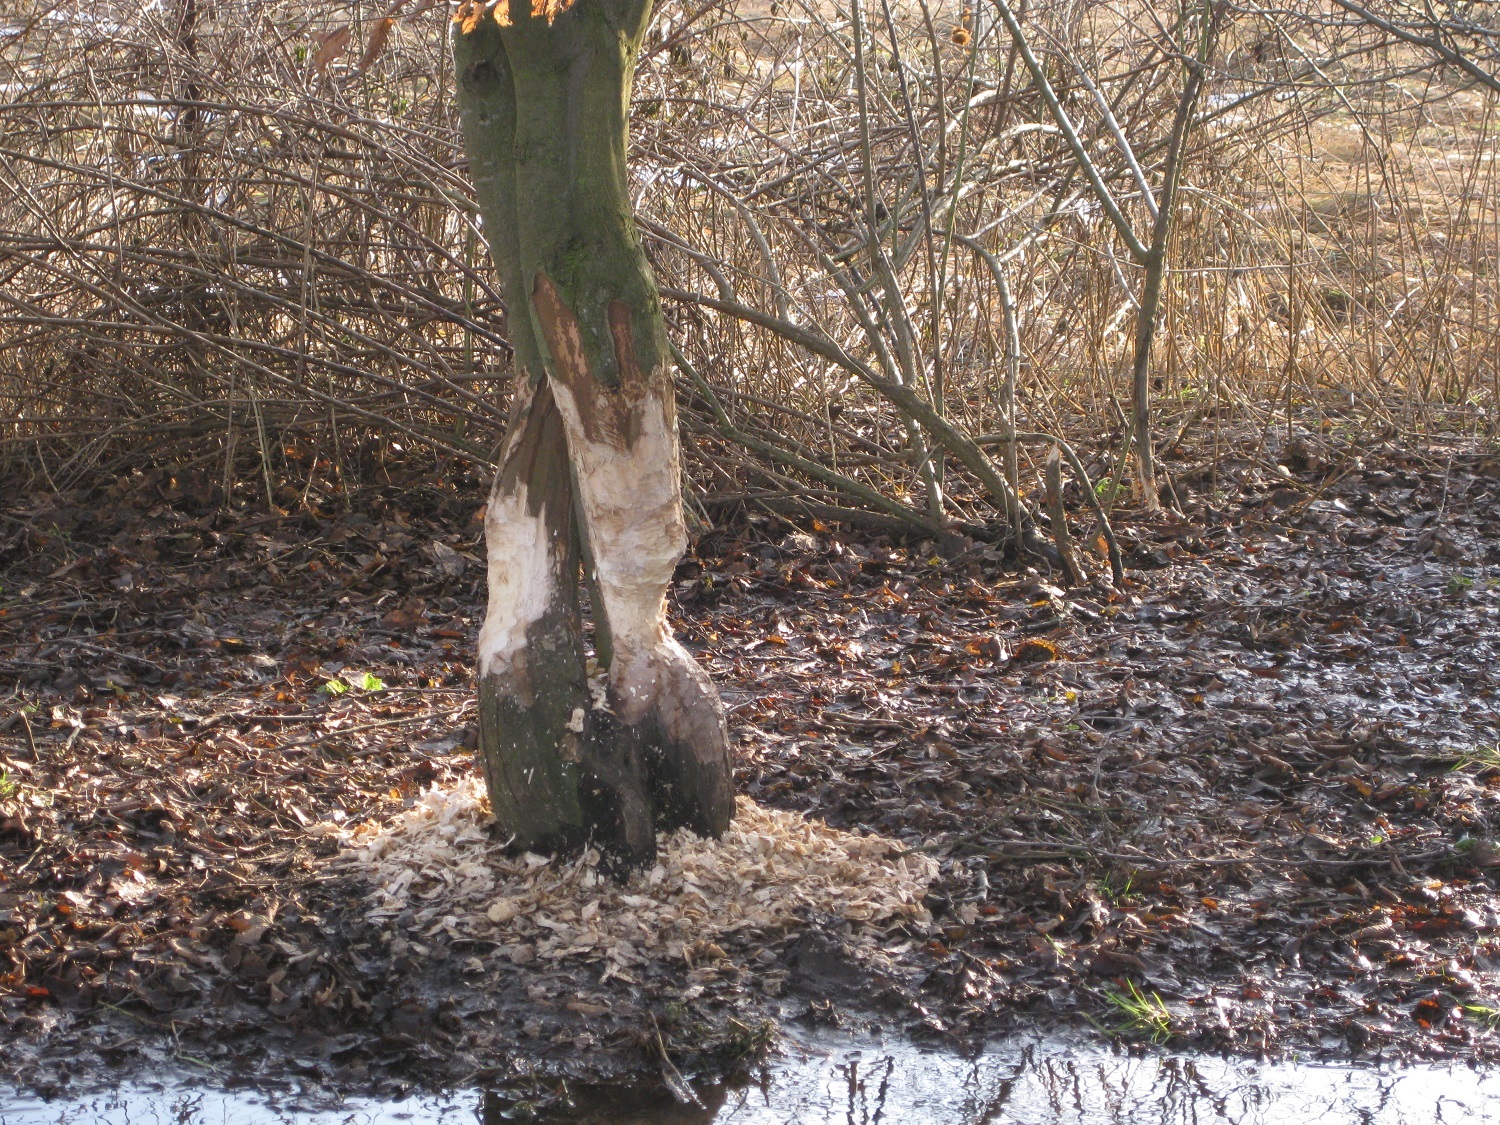 Beaver feeding trails